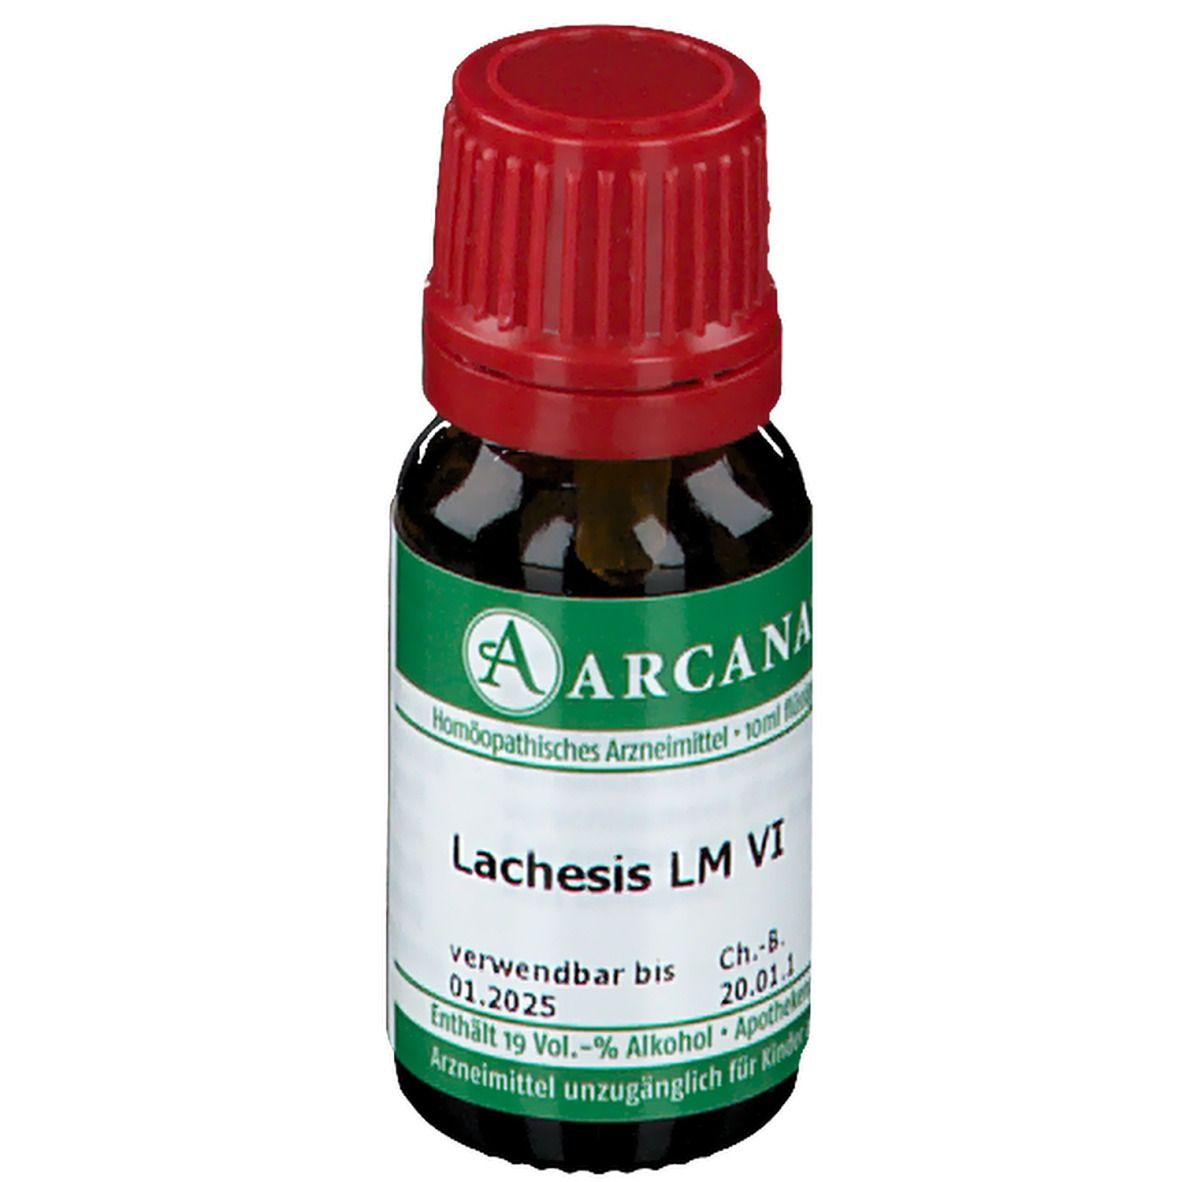 ARCANA® Lachesis LM VI